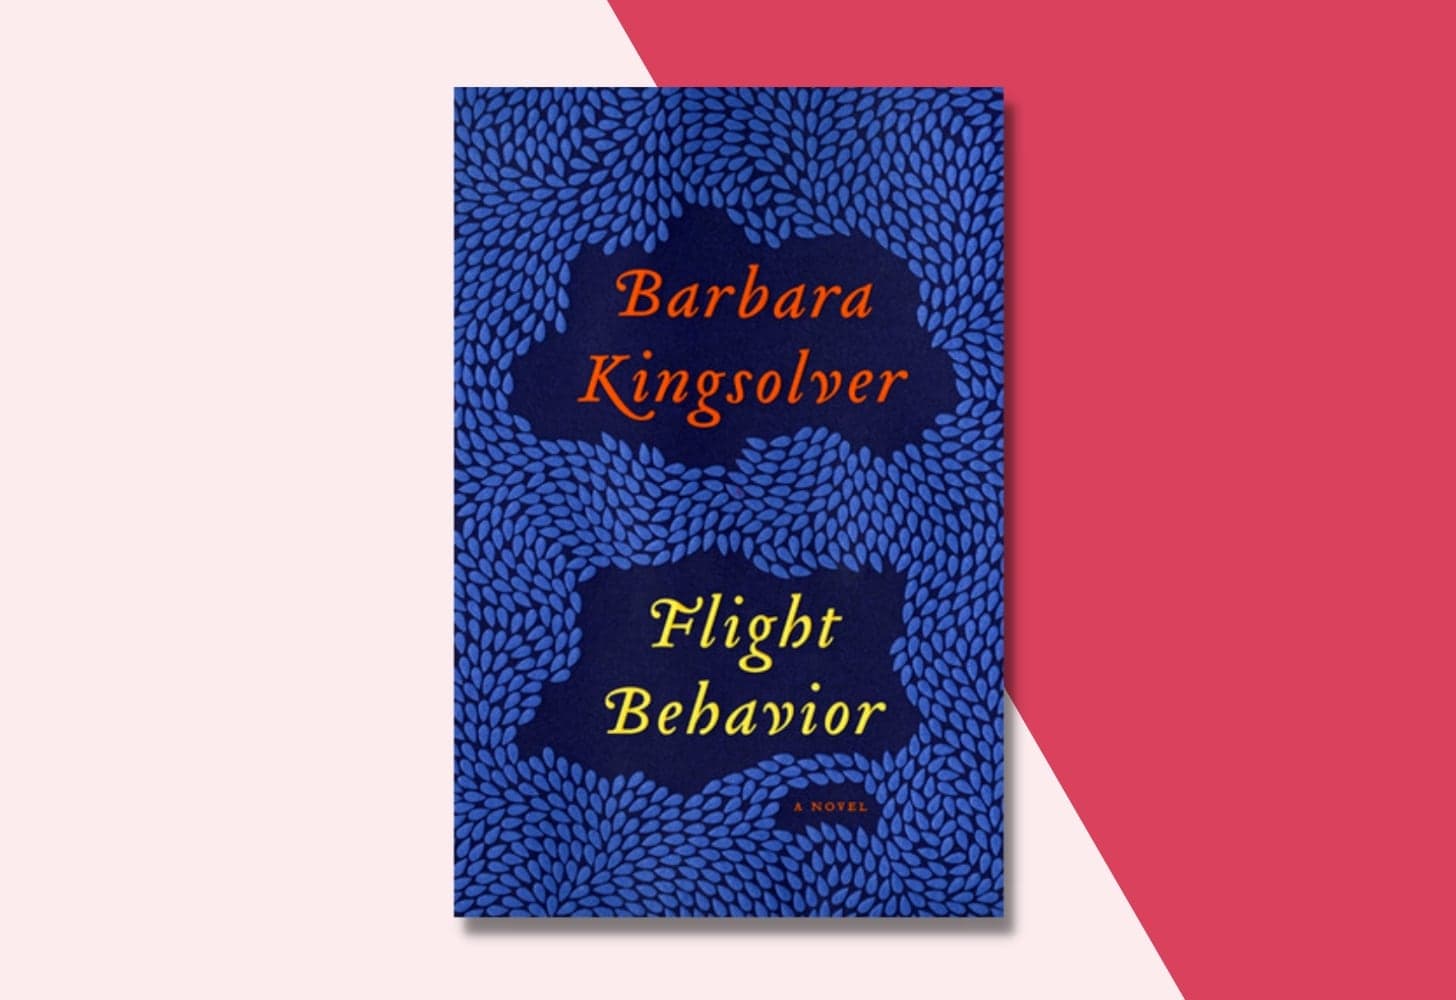 “Flight Behavior” by Barbara Kingsolver